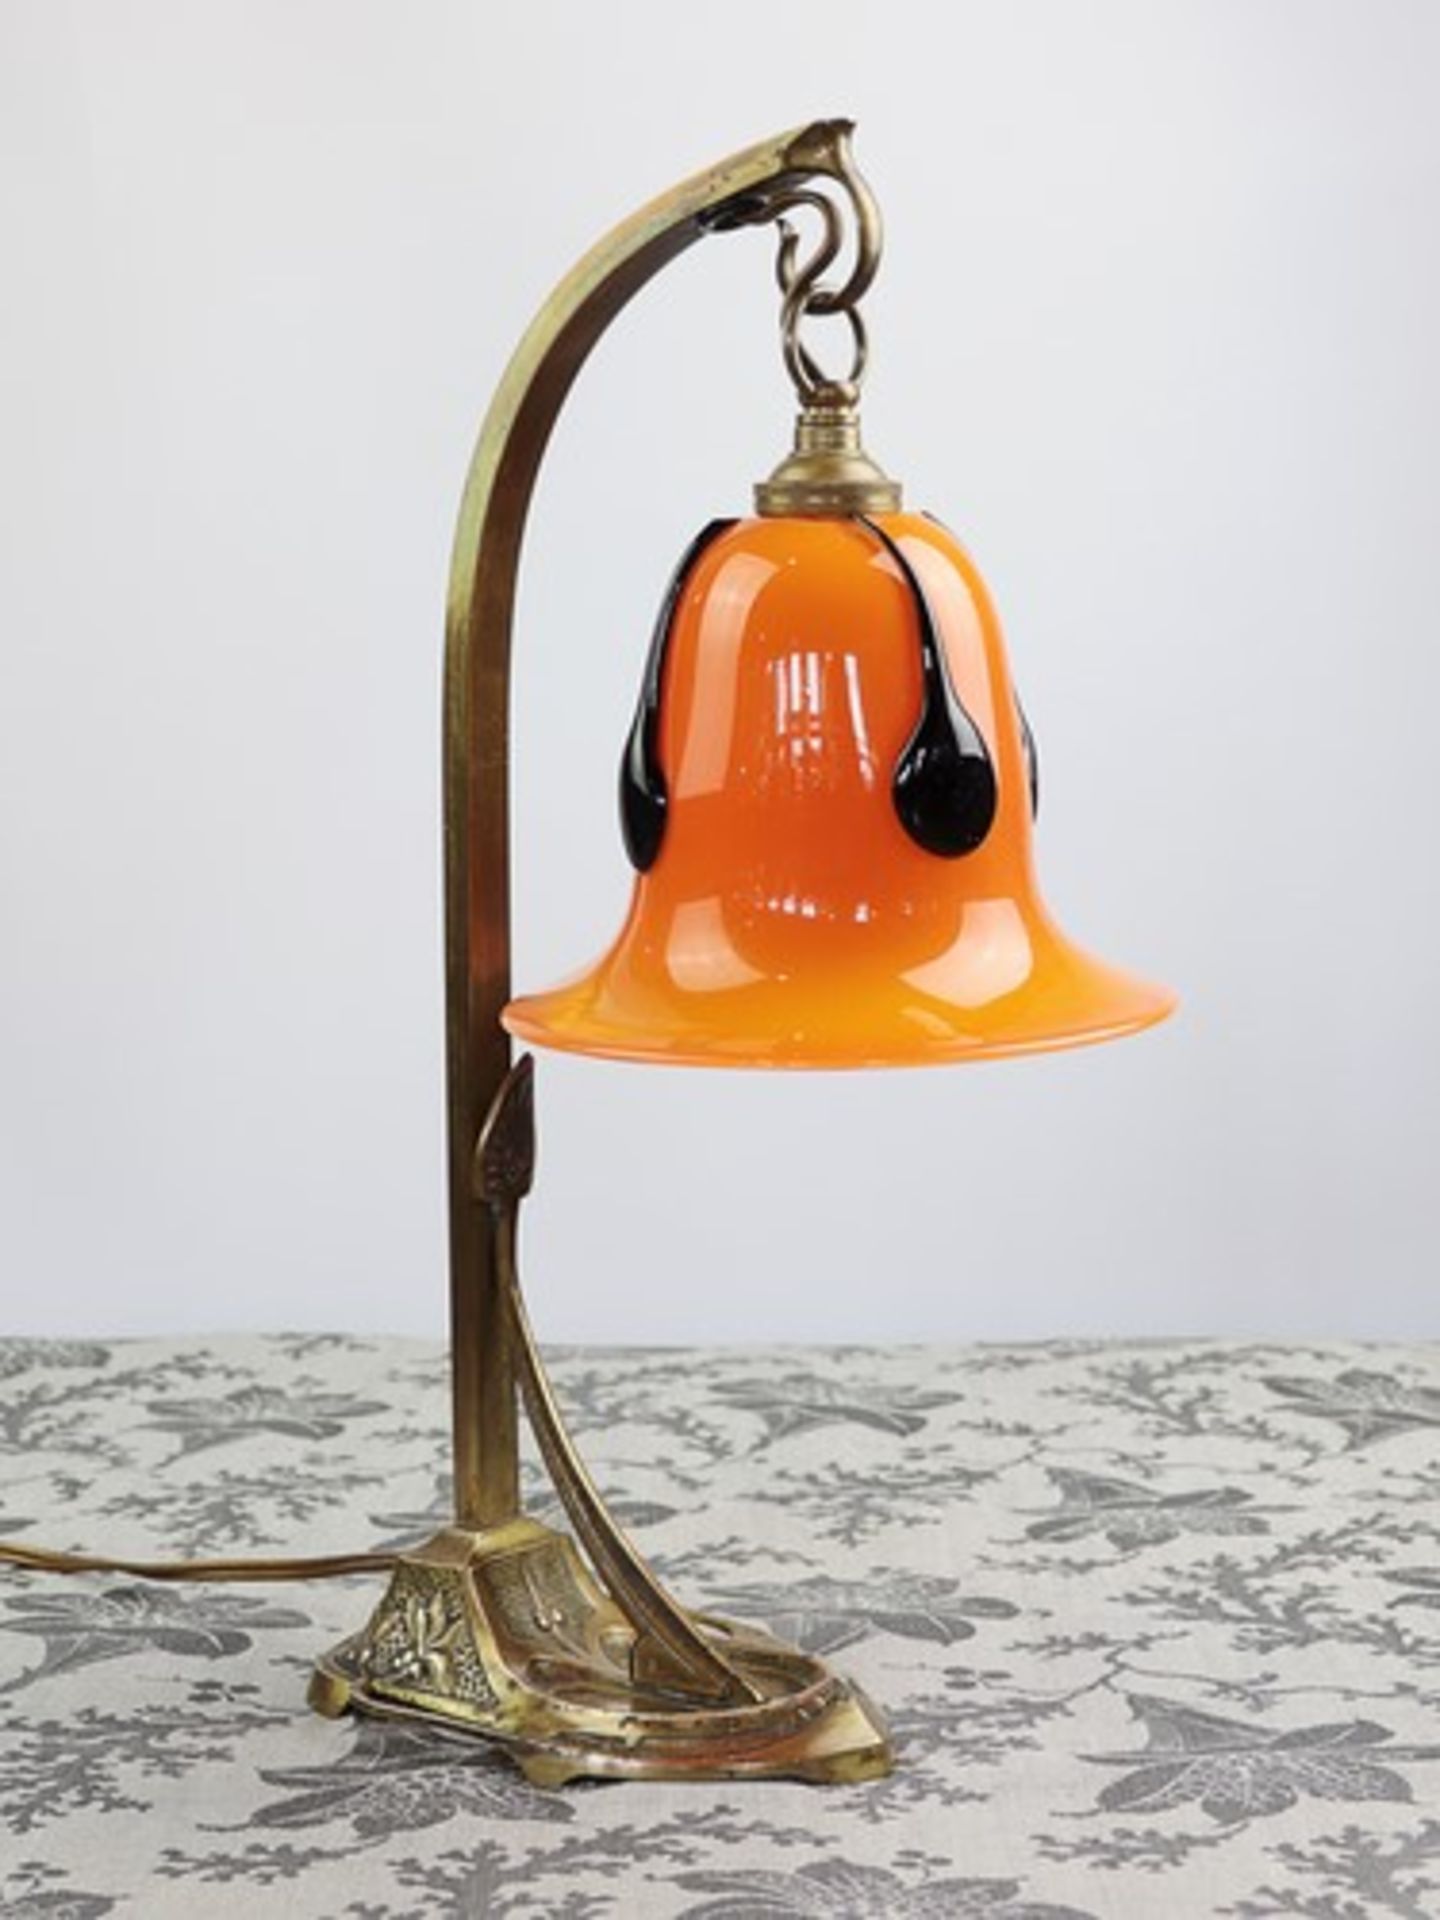 Loetz - Tischlampeum 1925/30, Art Déco, Messing/Tango-Glas, einflammig, durchbrochen gearbeiteter